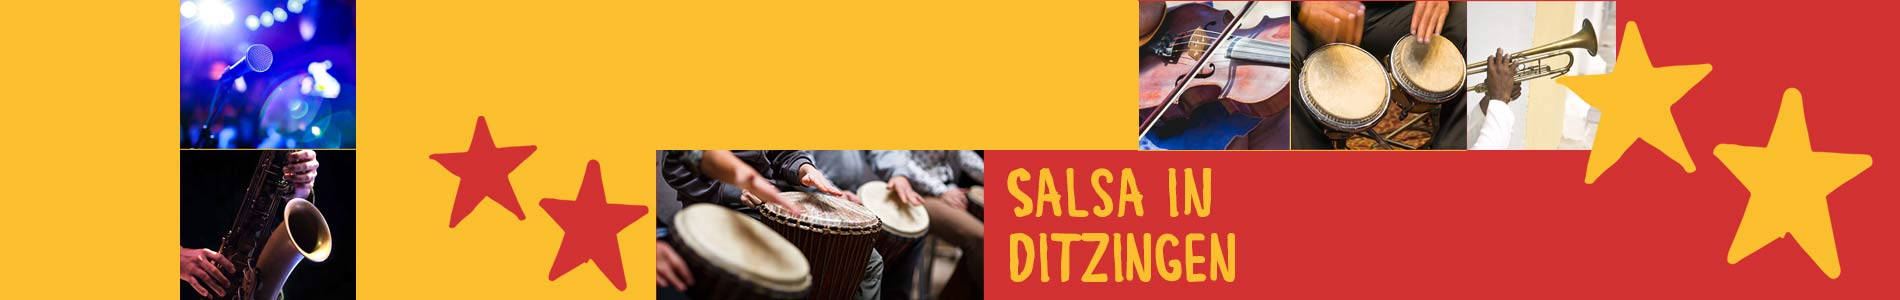 Salsa in Ditzingen – Salsa lernen und tanzen, Tanzkurse, Partys, Veranstaltungen